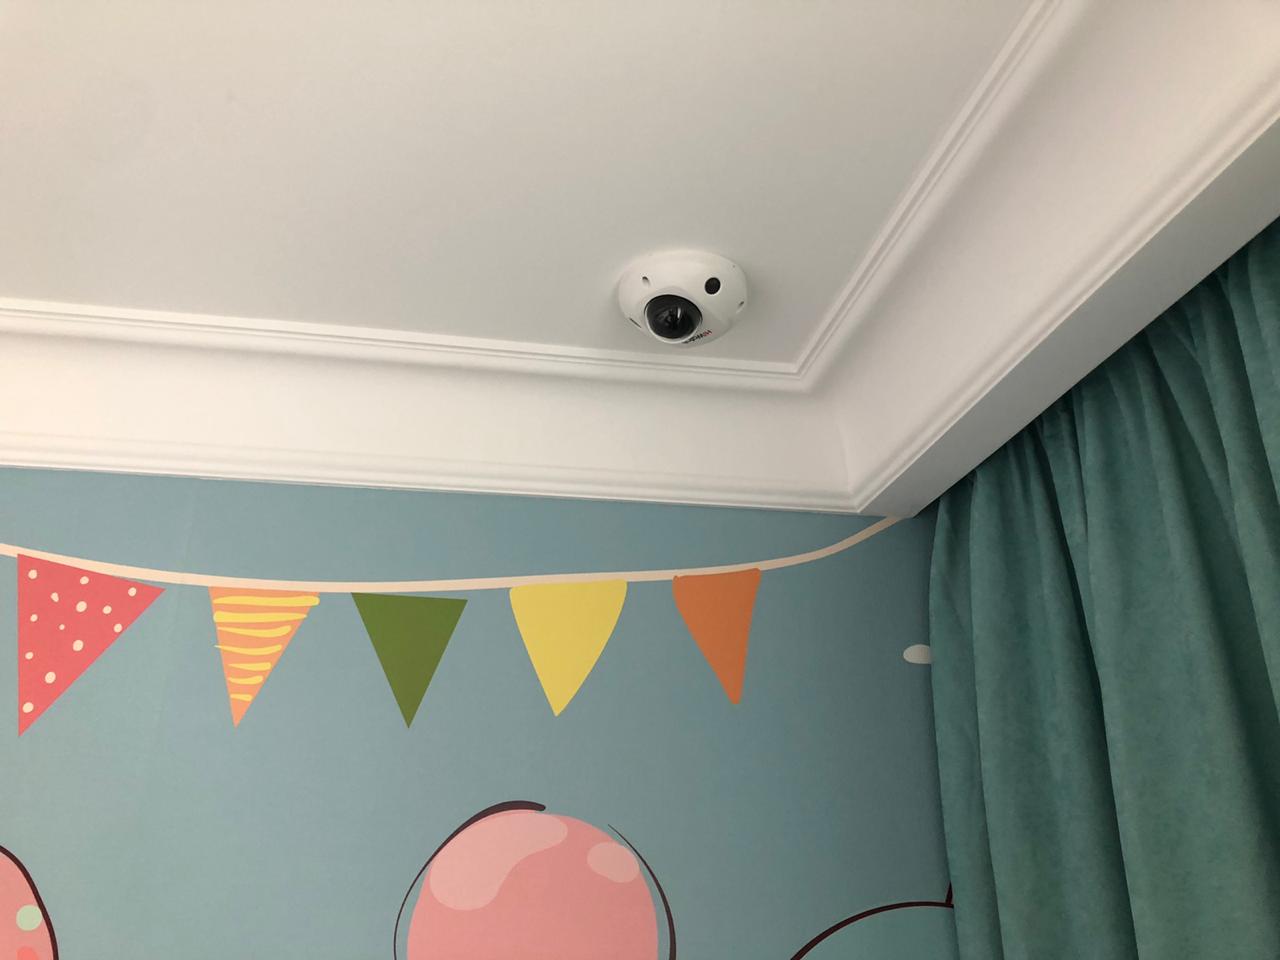 купольная камера видеонаблюдения HiWatсh DS-I259M в квартире